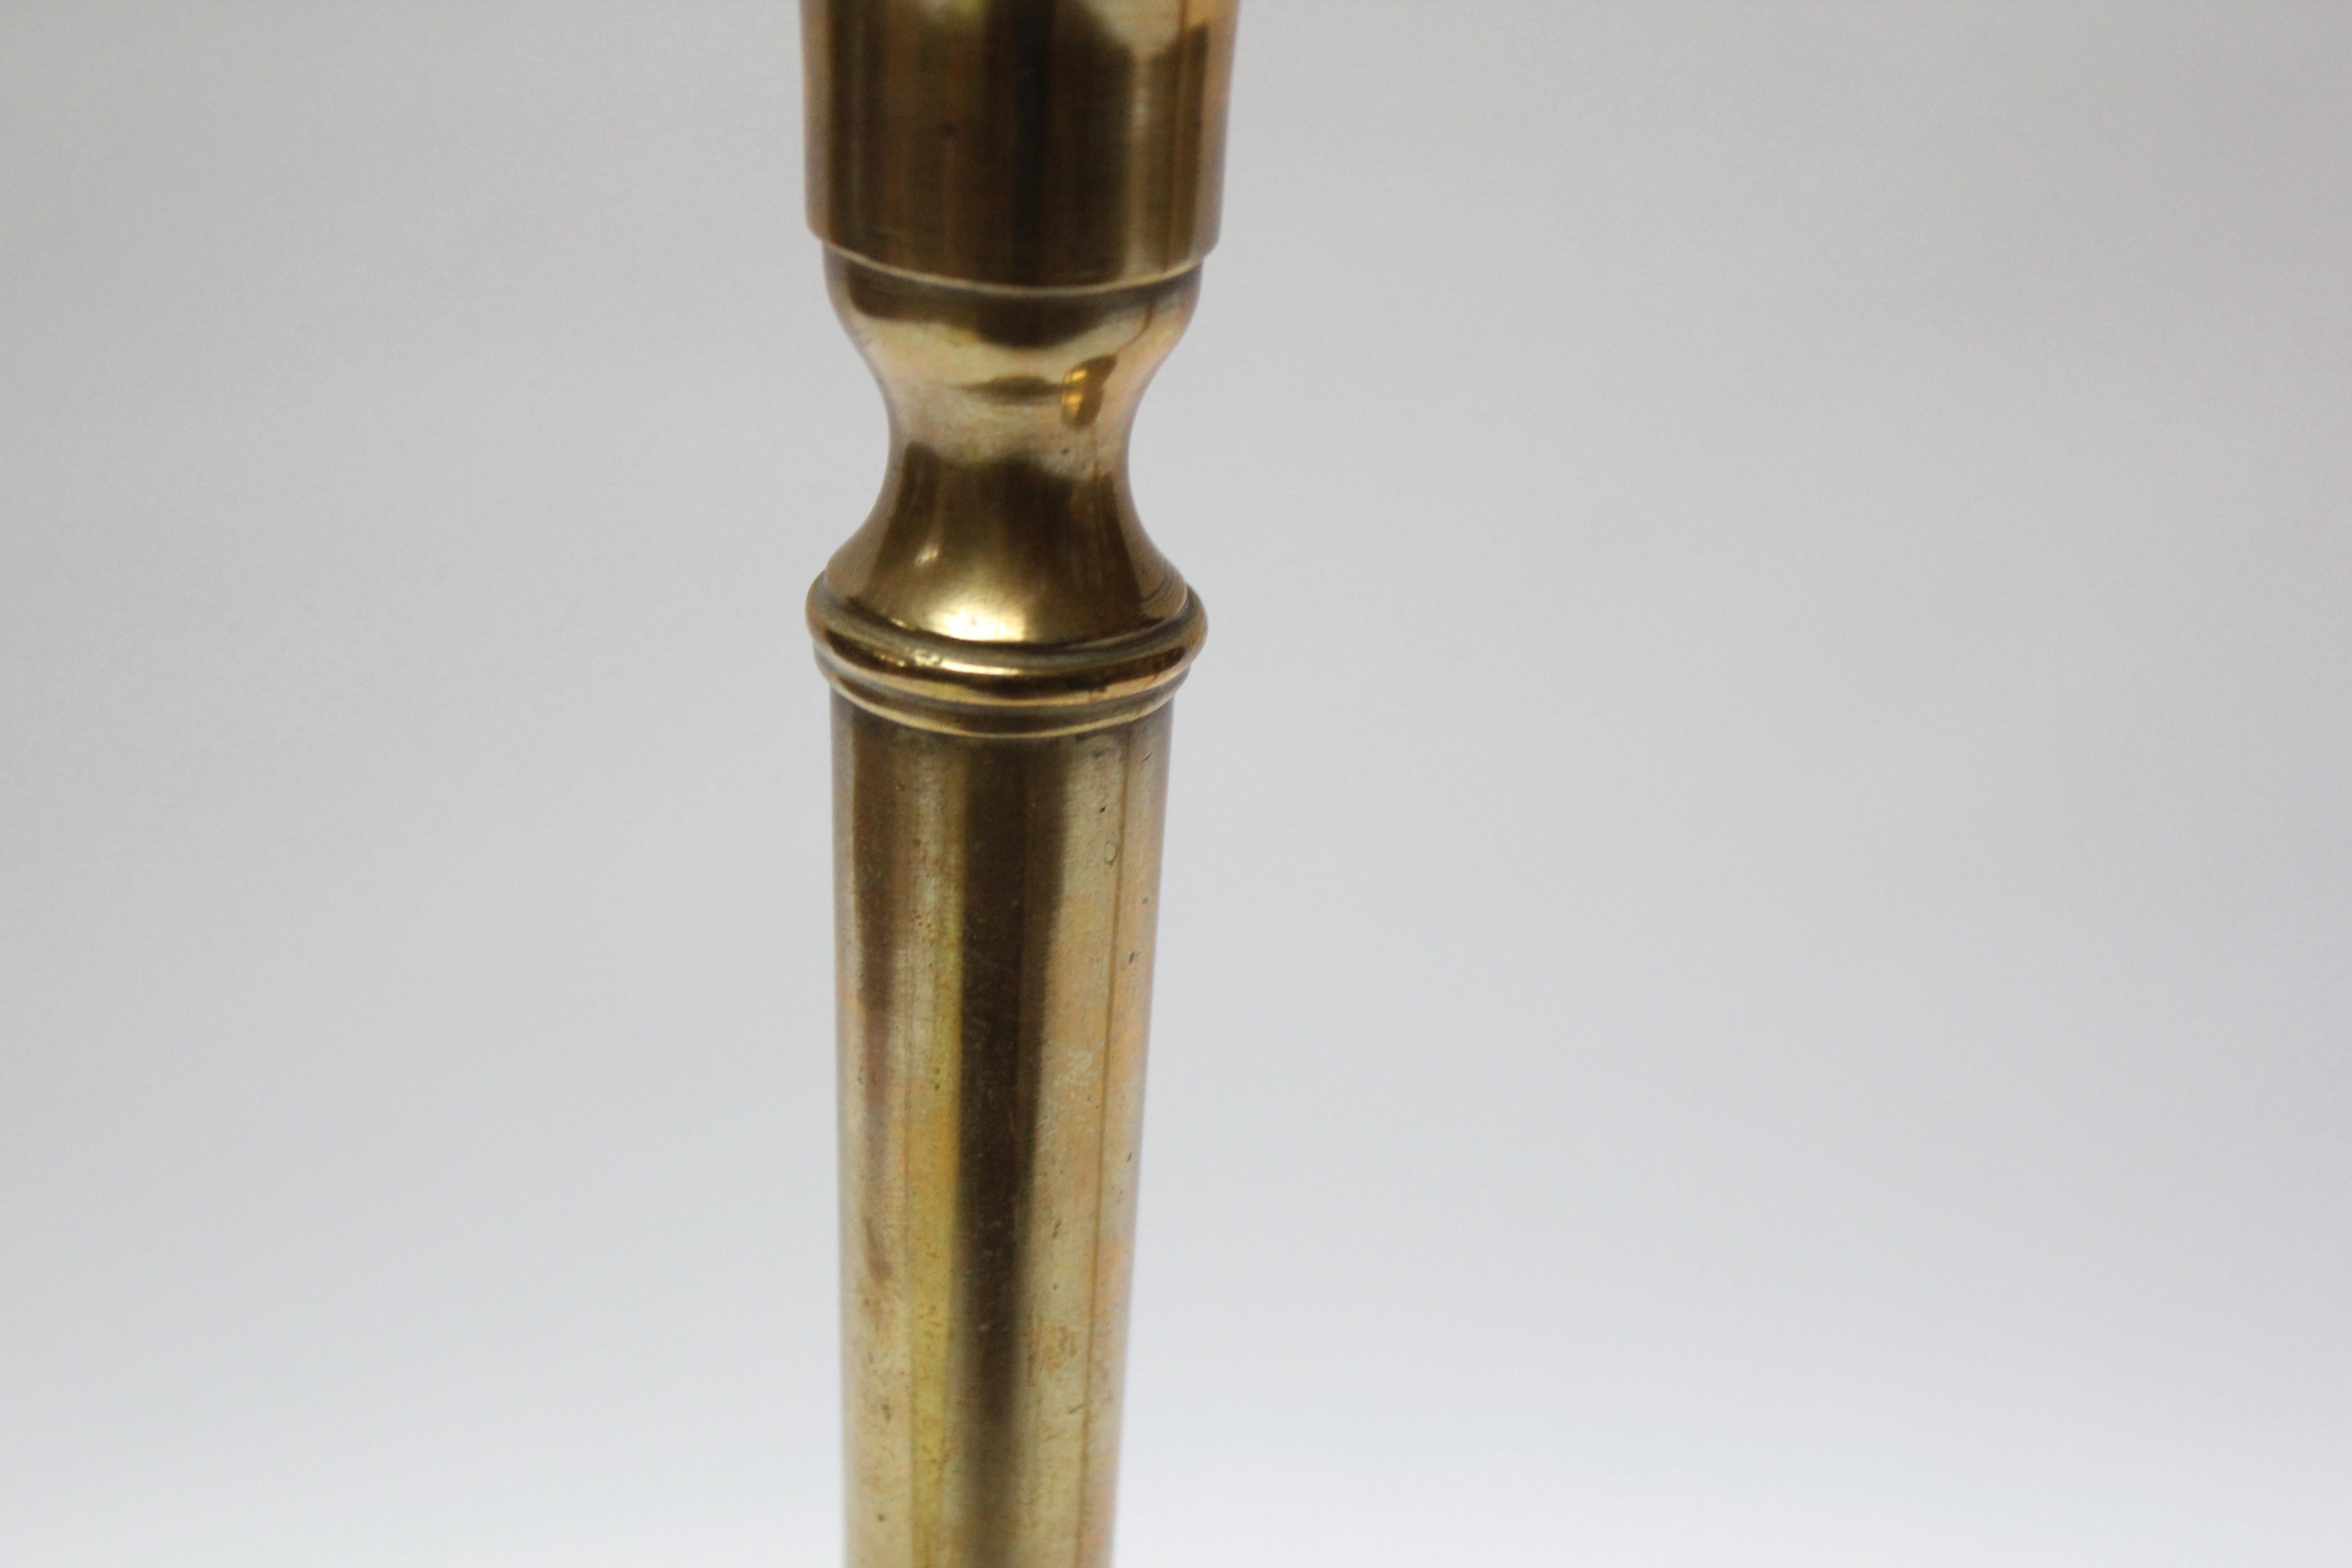 Pair of Tall Nashua Brass Art & Crafts Turned Brass Candlesticks 5